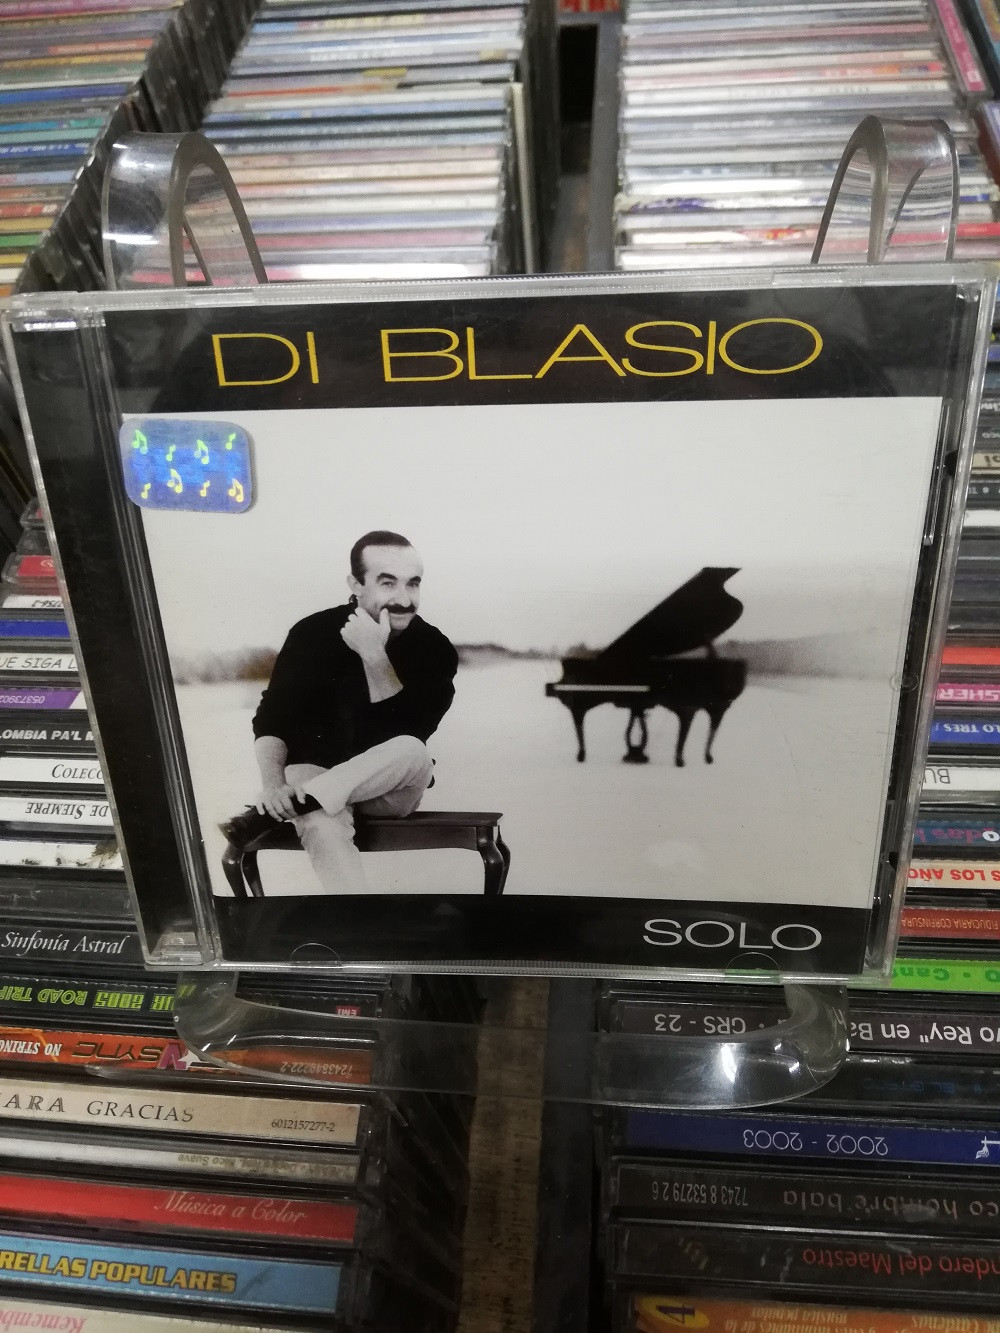 Imagen CD RAUL DI BLASIO - SOLO